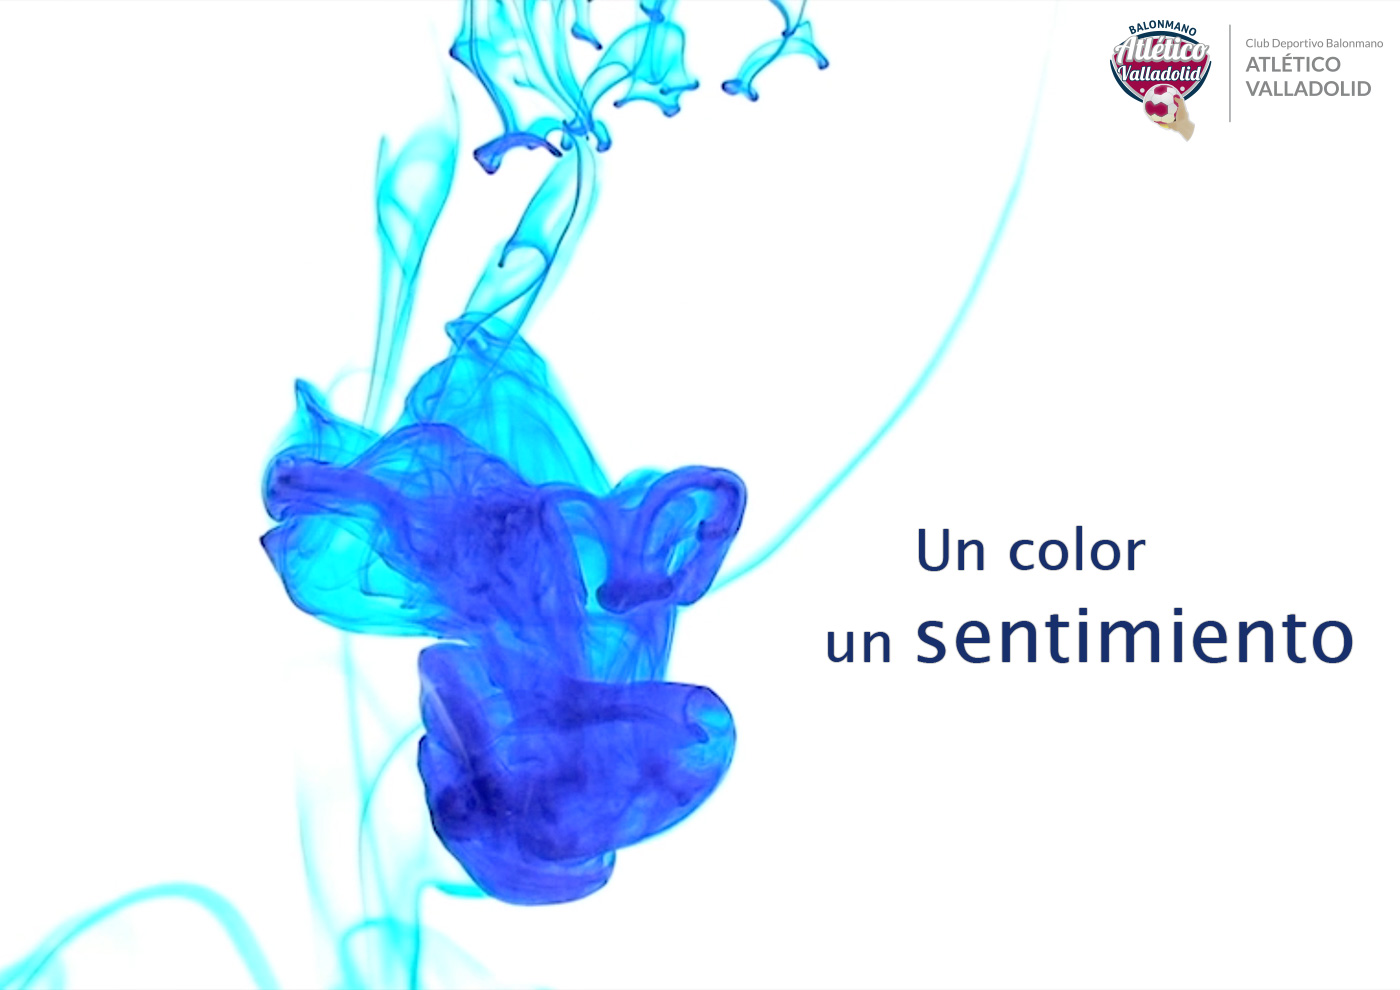 ‘Un color, un sentimiento’, campaña del Atlético Valladolid Recoletas